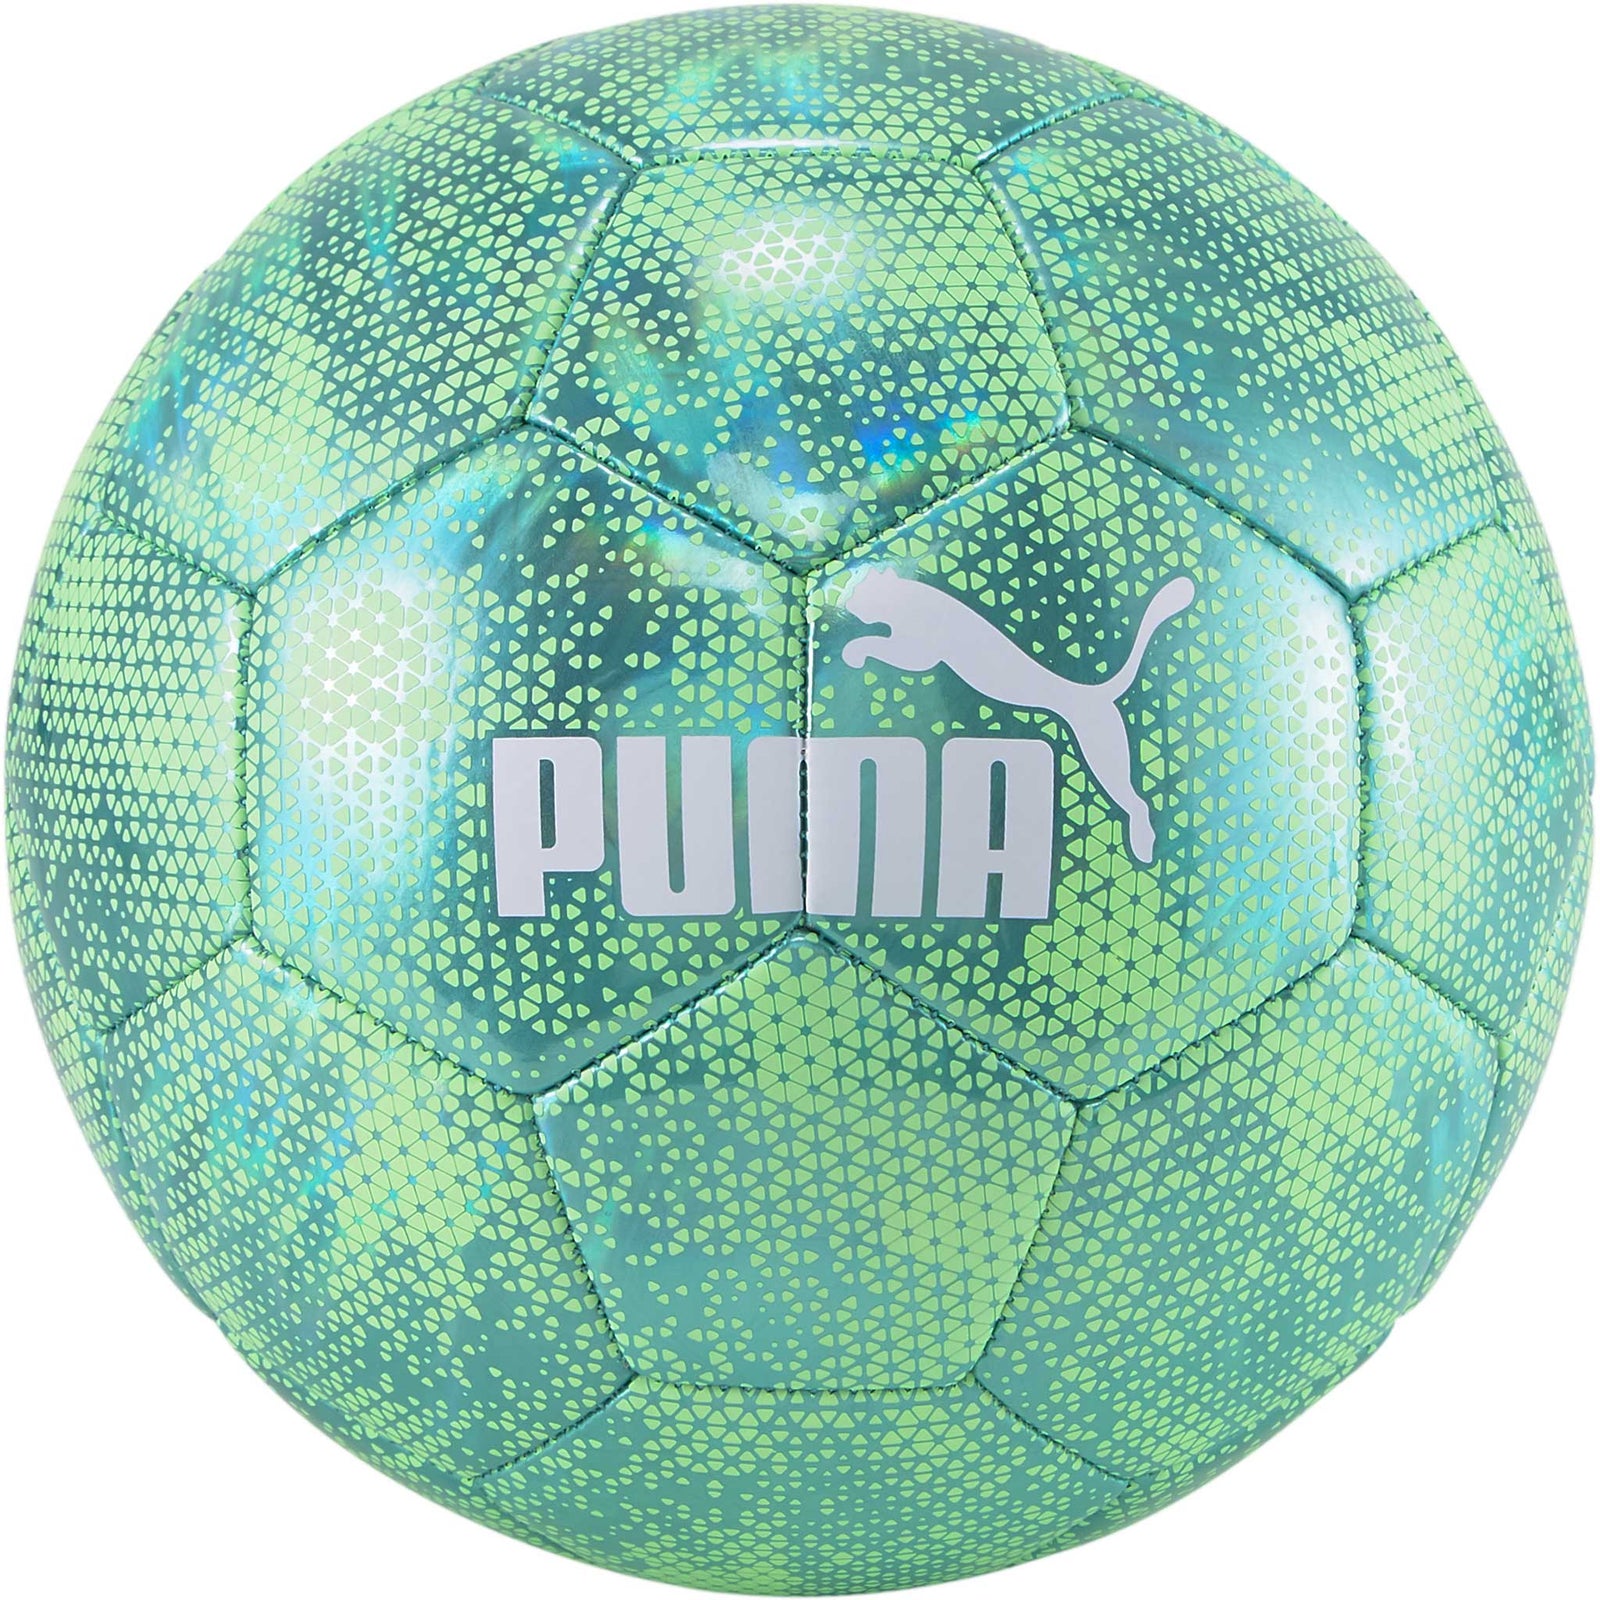 Ballon de soccer intérieur - Distribution Sports Loisirs